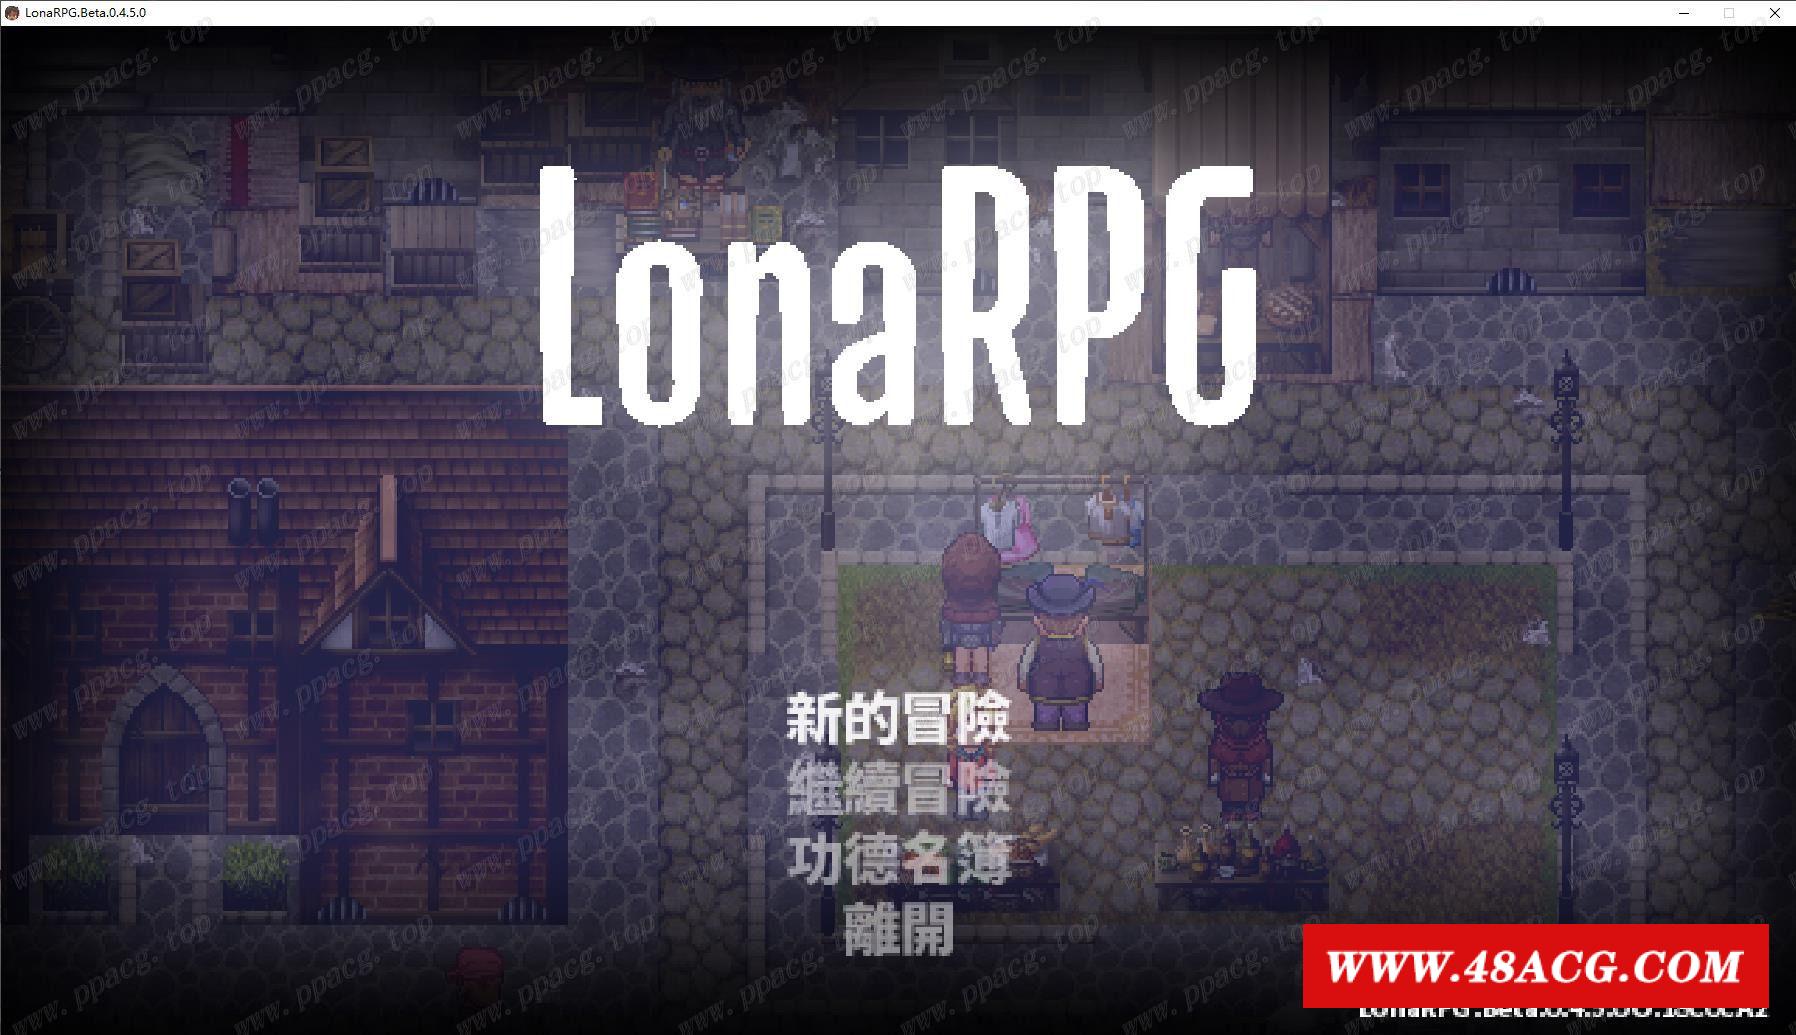 【黑暗RPG/中文/动态】洛娜的世界RPG V0.4.50 官方中文步冰版/付攻略【900M】【更新】-ACG宝库